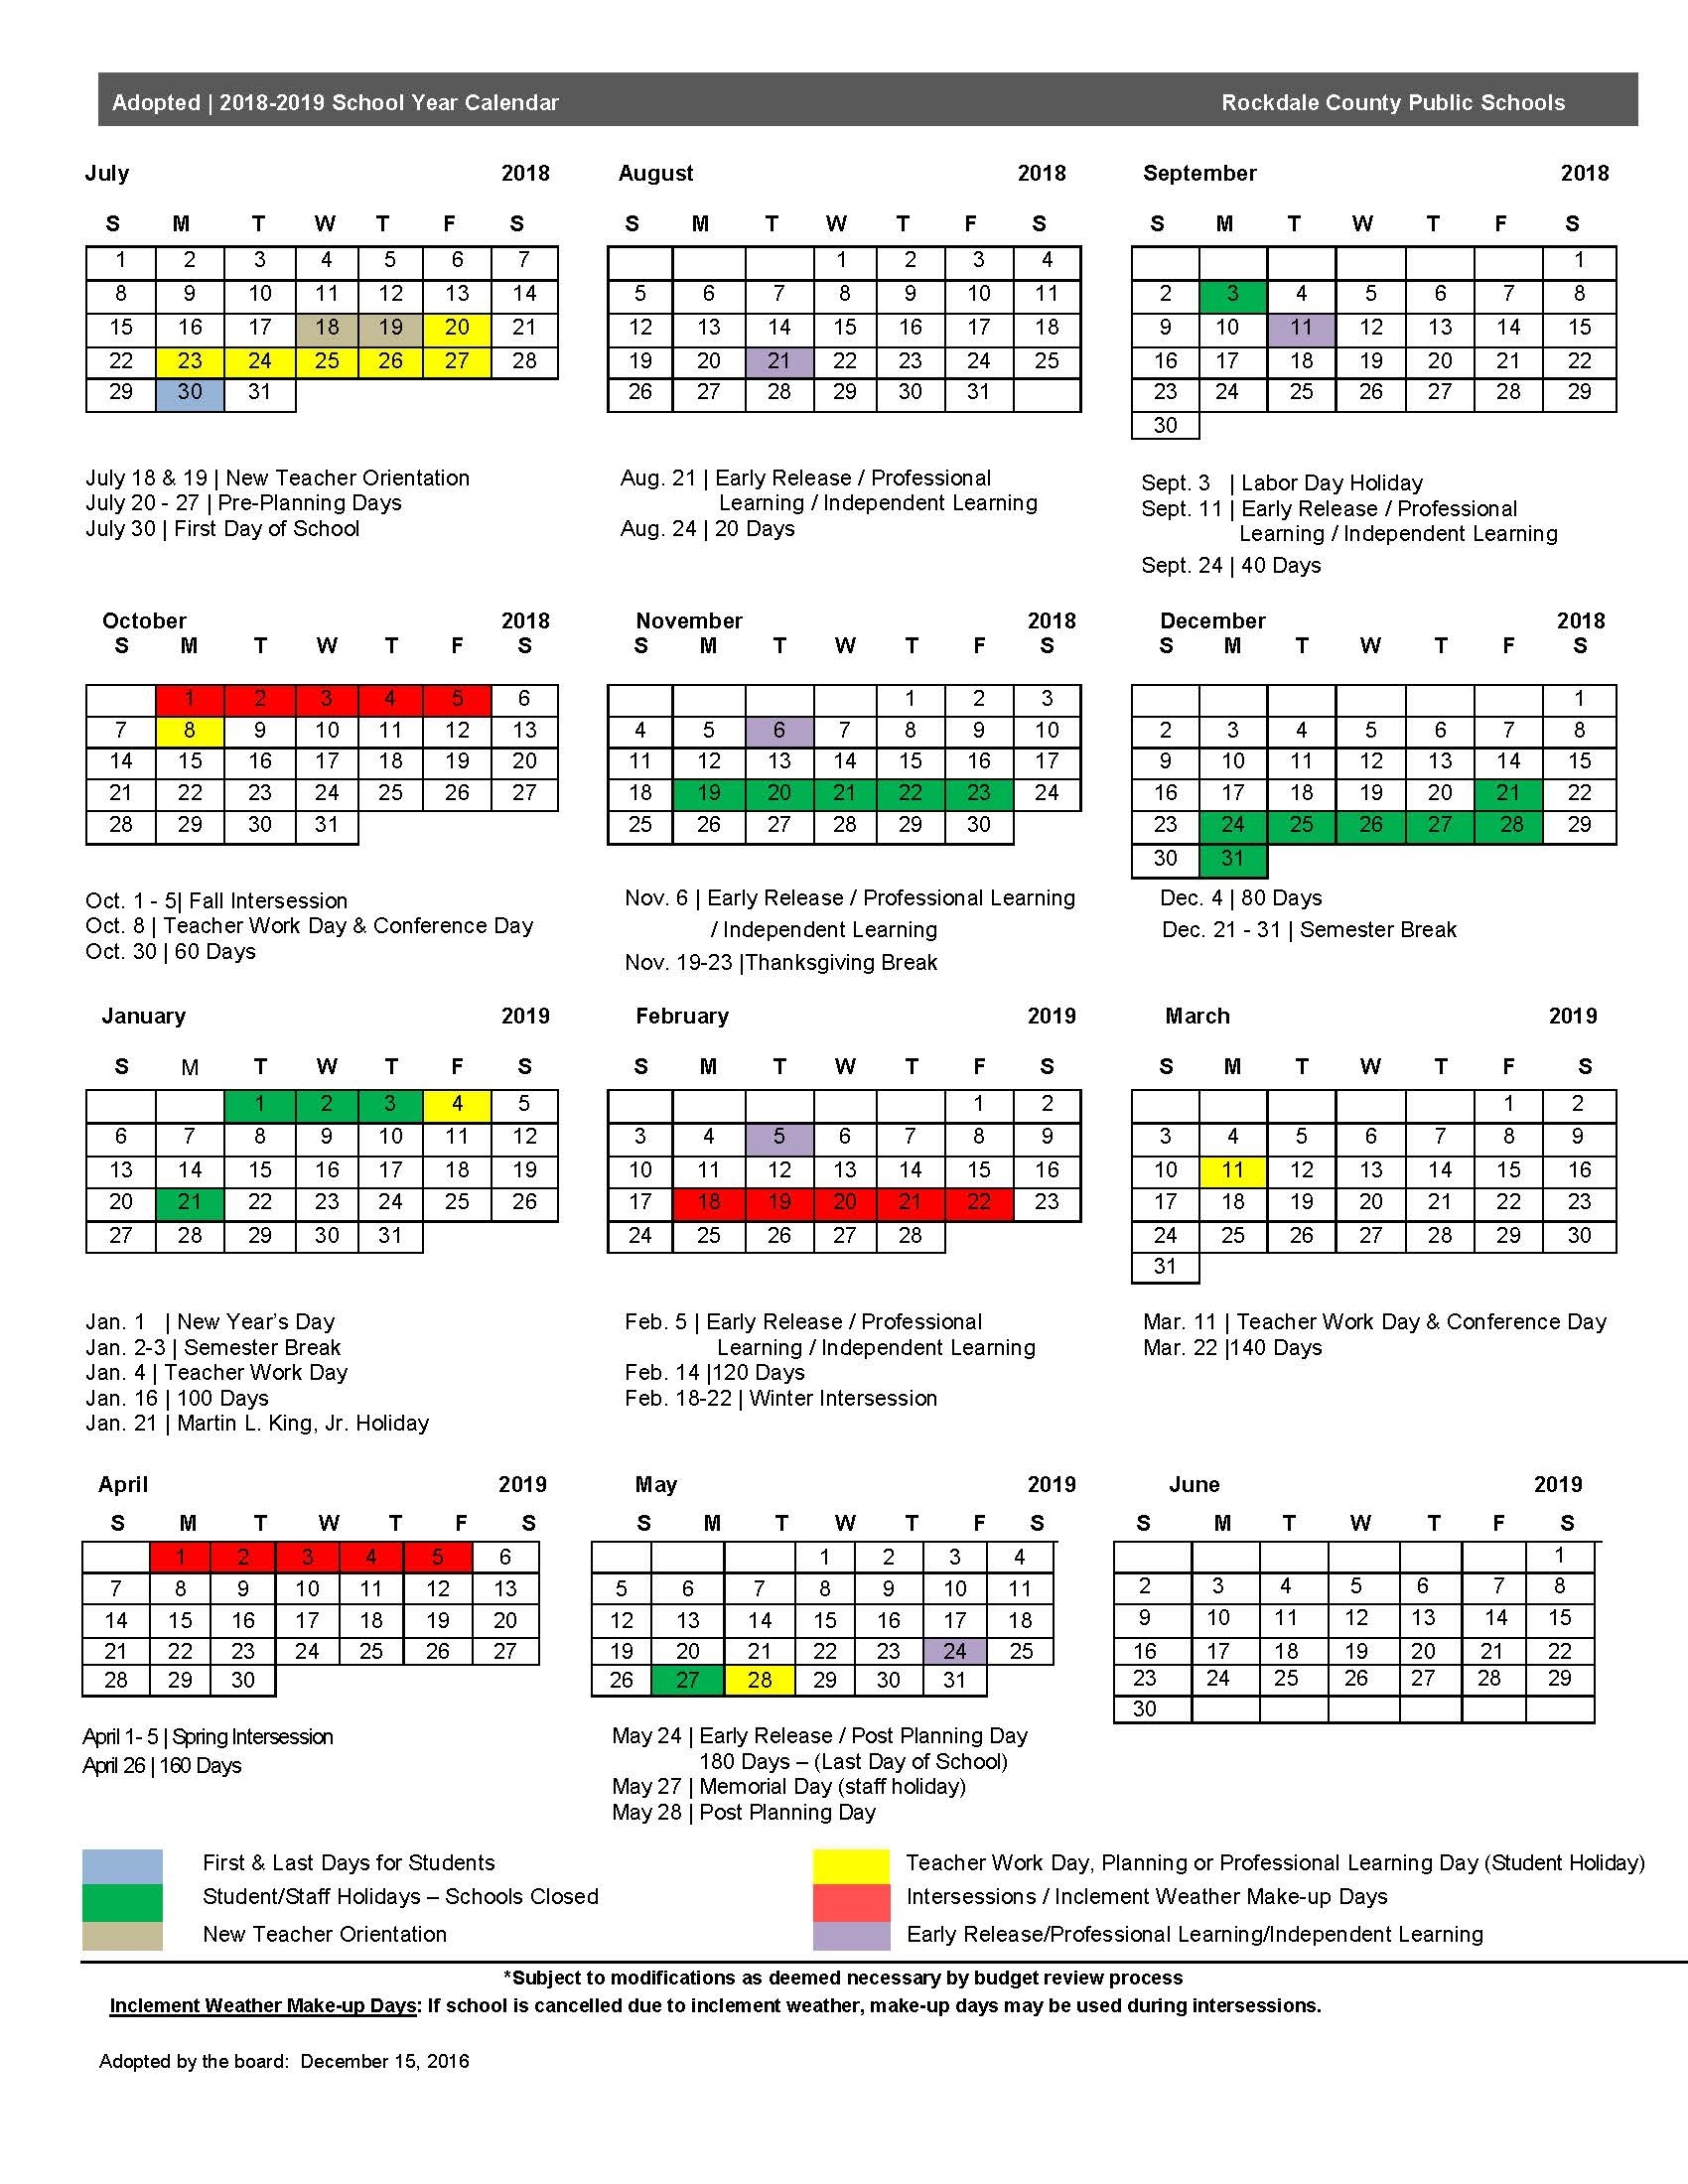 2018-19 Calendar - Rockdale County Public Schools Ps 8 School Calendar